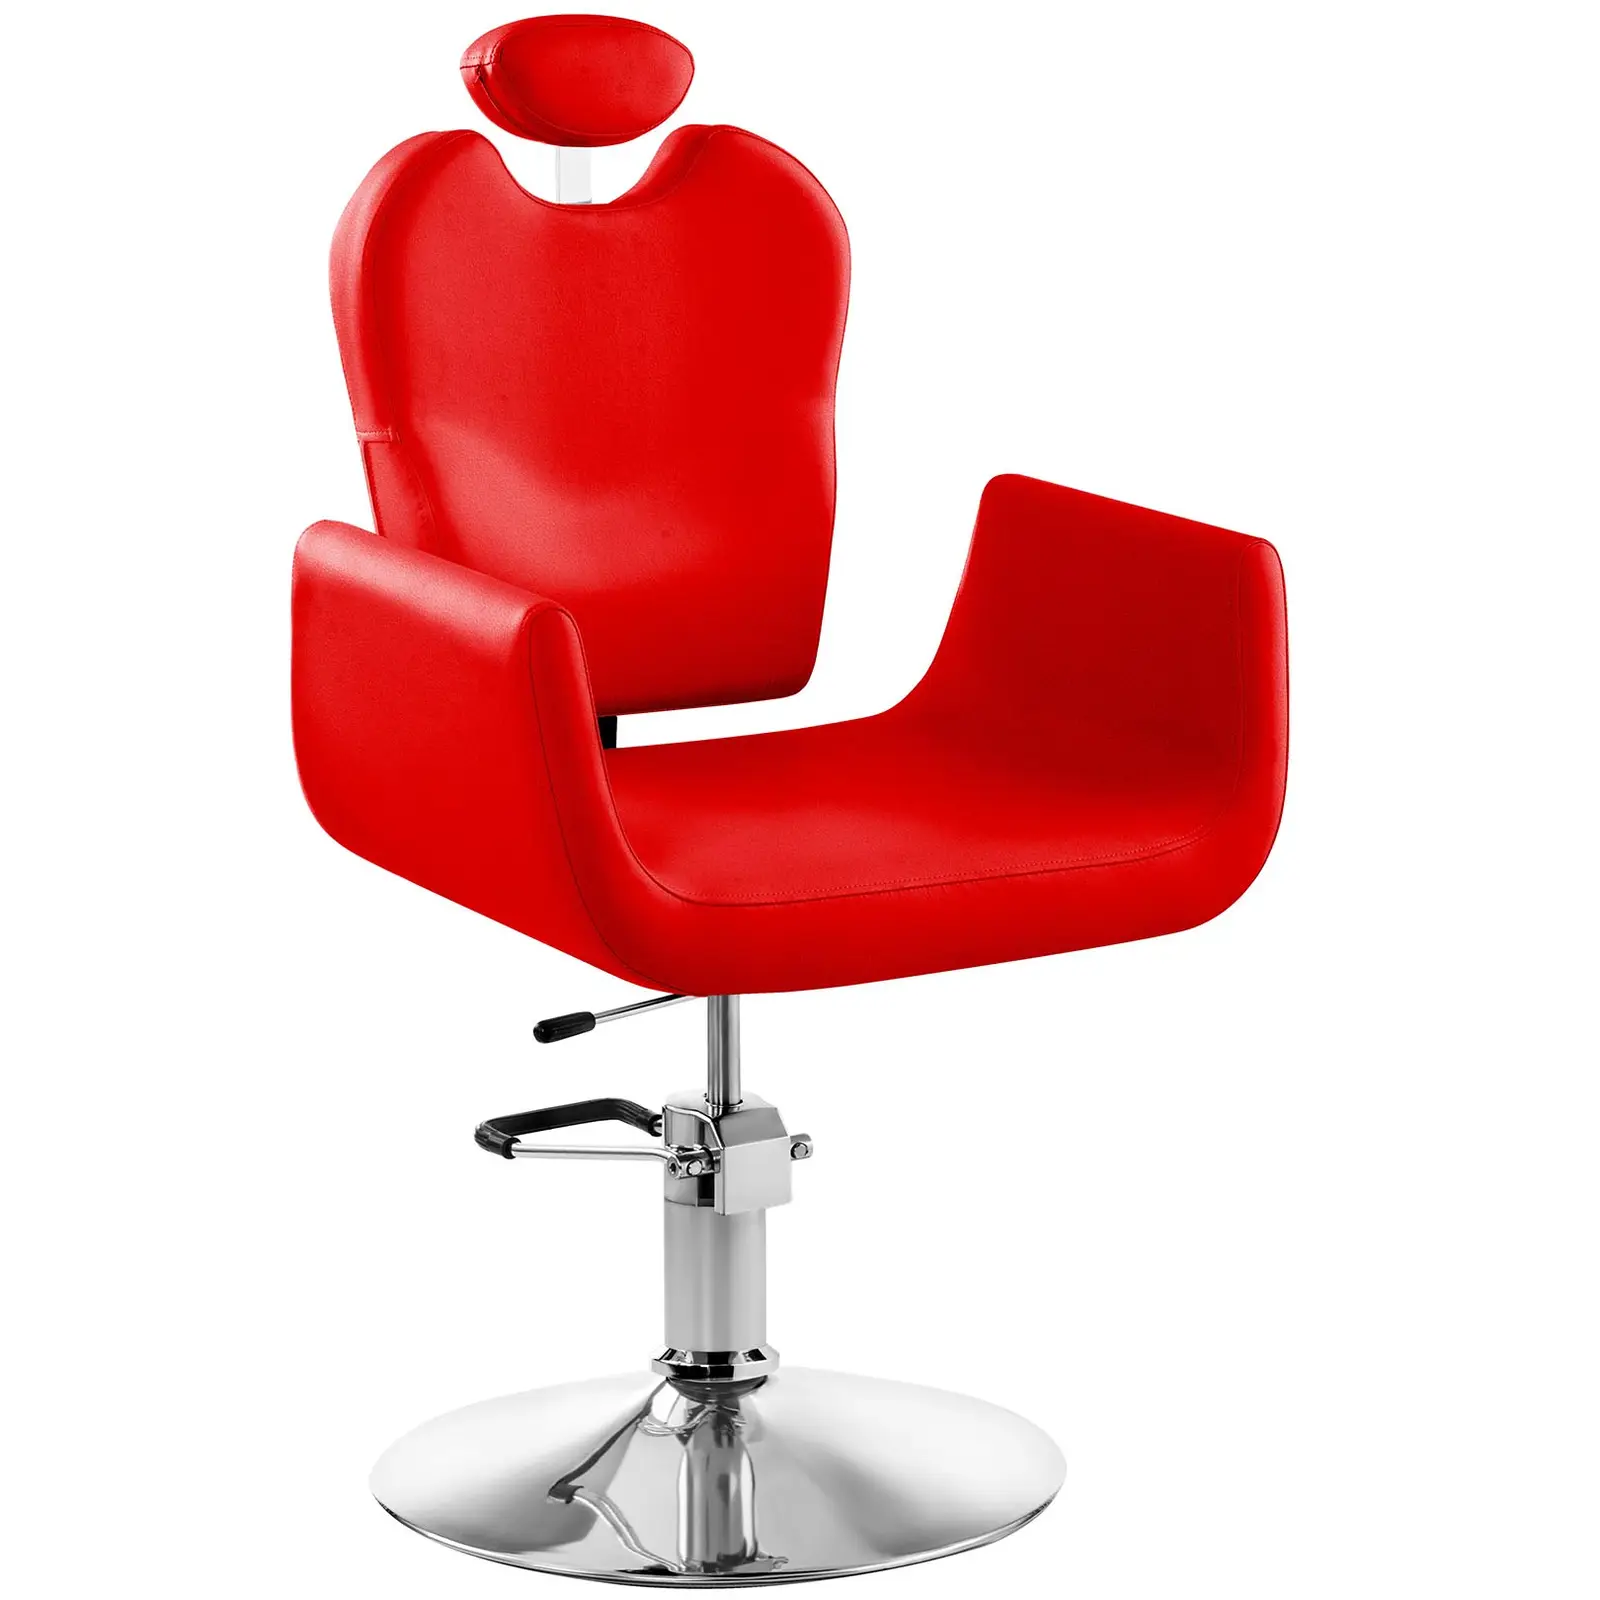 Fodrász szék Livorno piros | physa